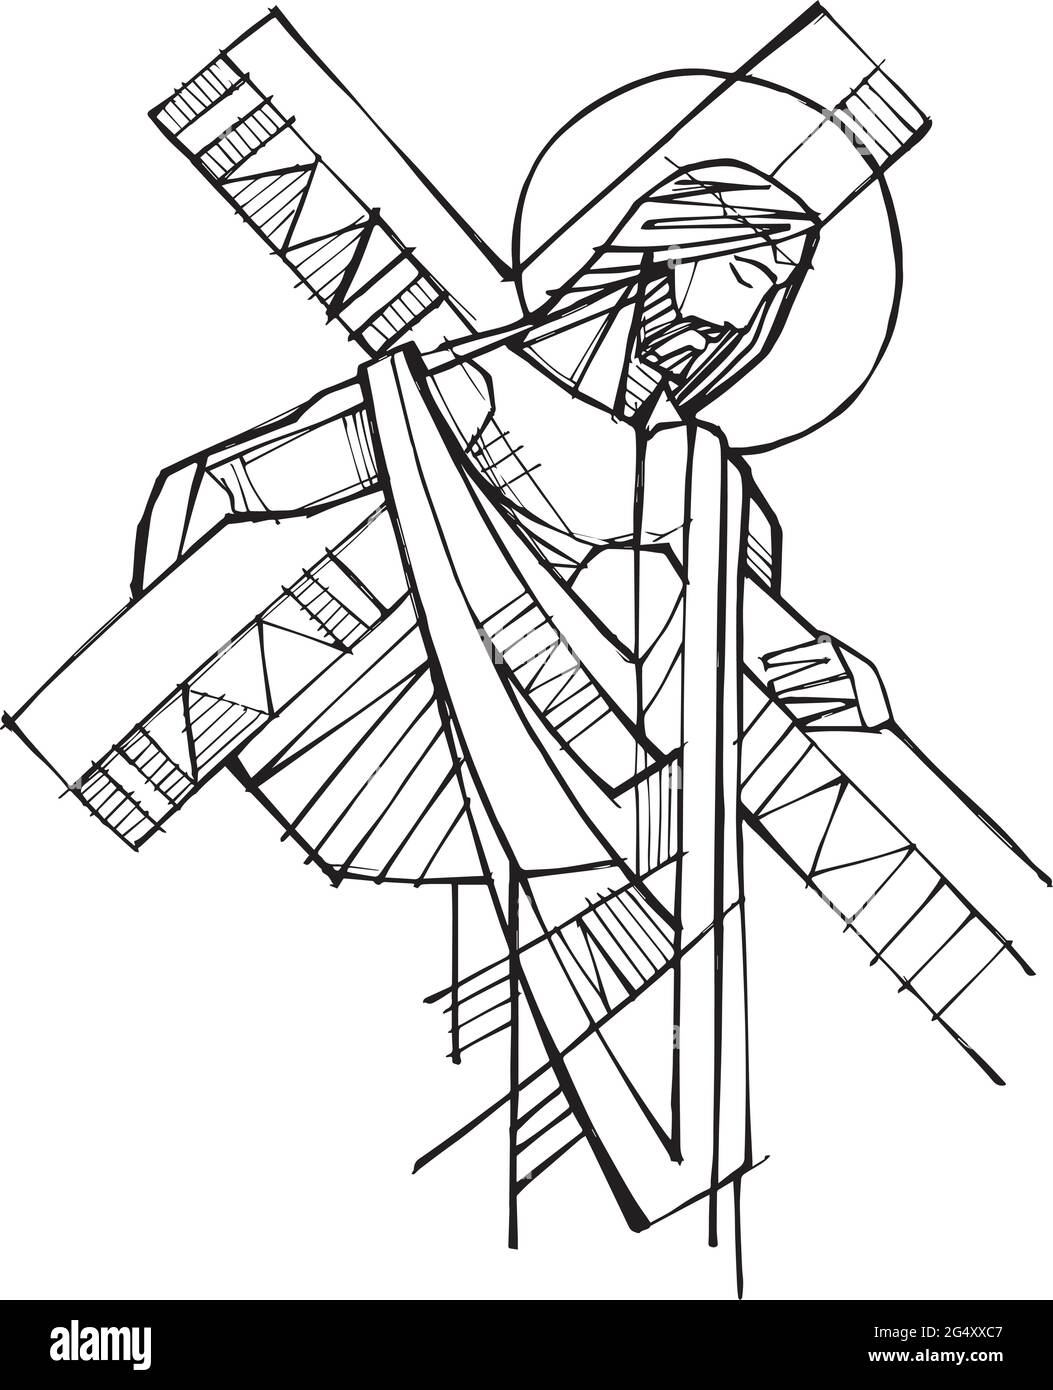 Illustration vectorielle dessinée à la main ou dessin de Jésus-Christ avec la Croix dans sa passion Illustration de Vecteur